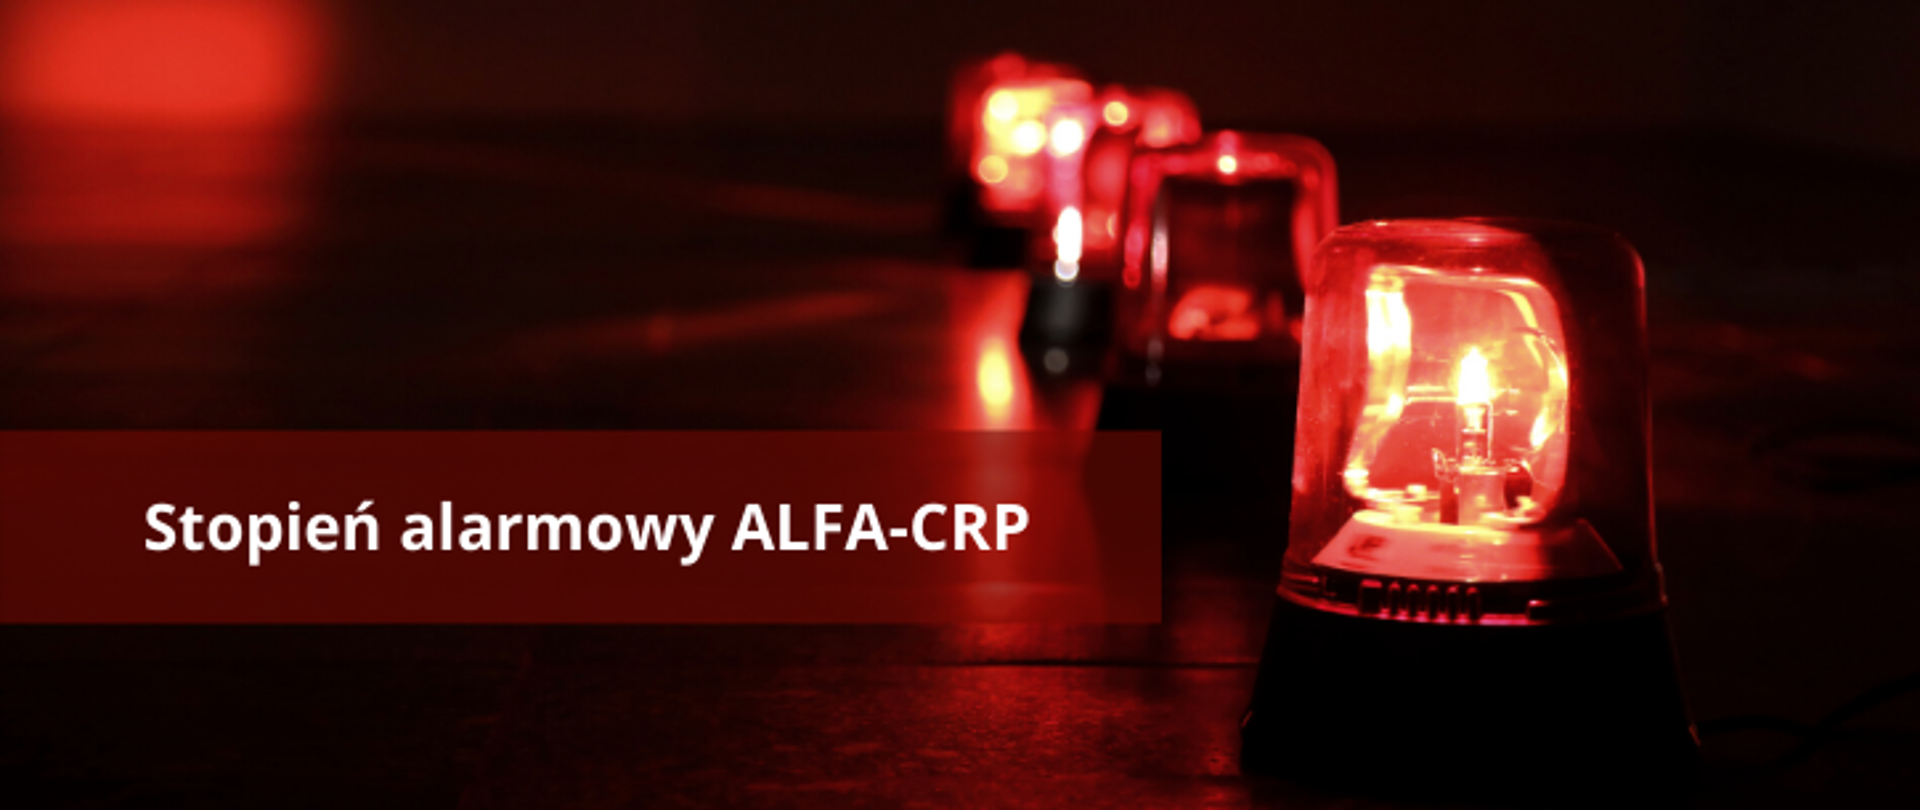 Grafika przedstawia zapalone syreny alarmowe po prawej stronie oraz napis "Stopień alarmowy ALFA-CRP" po lewej stronie.